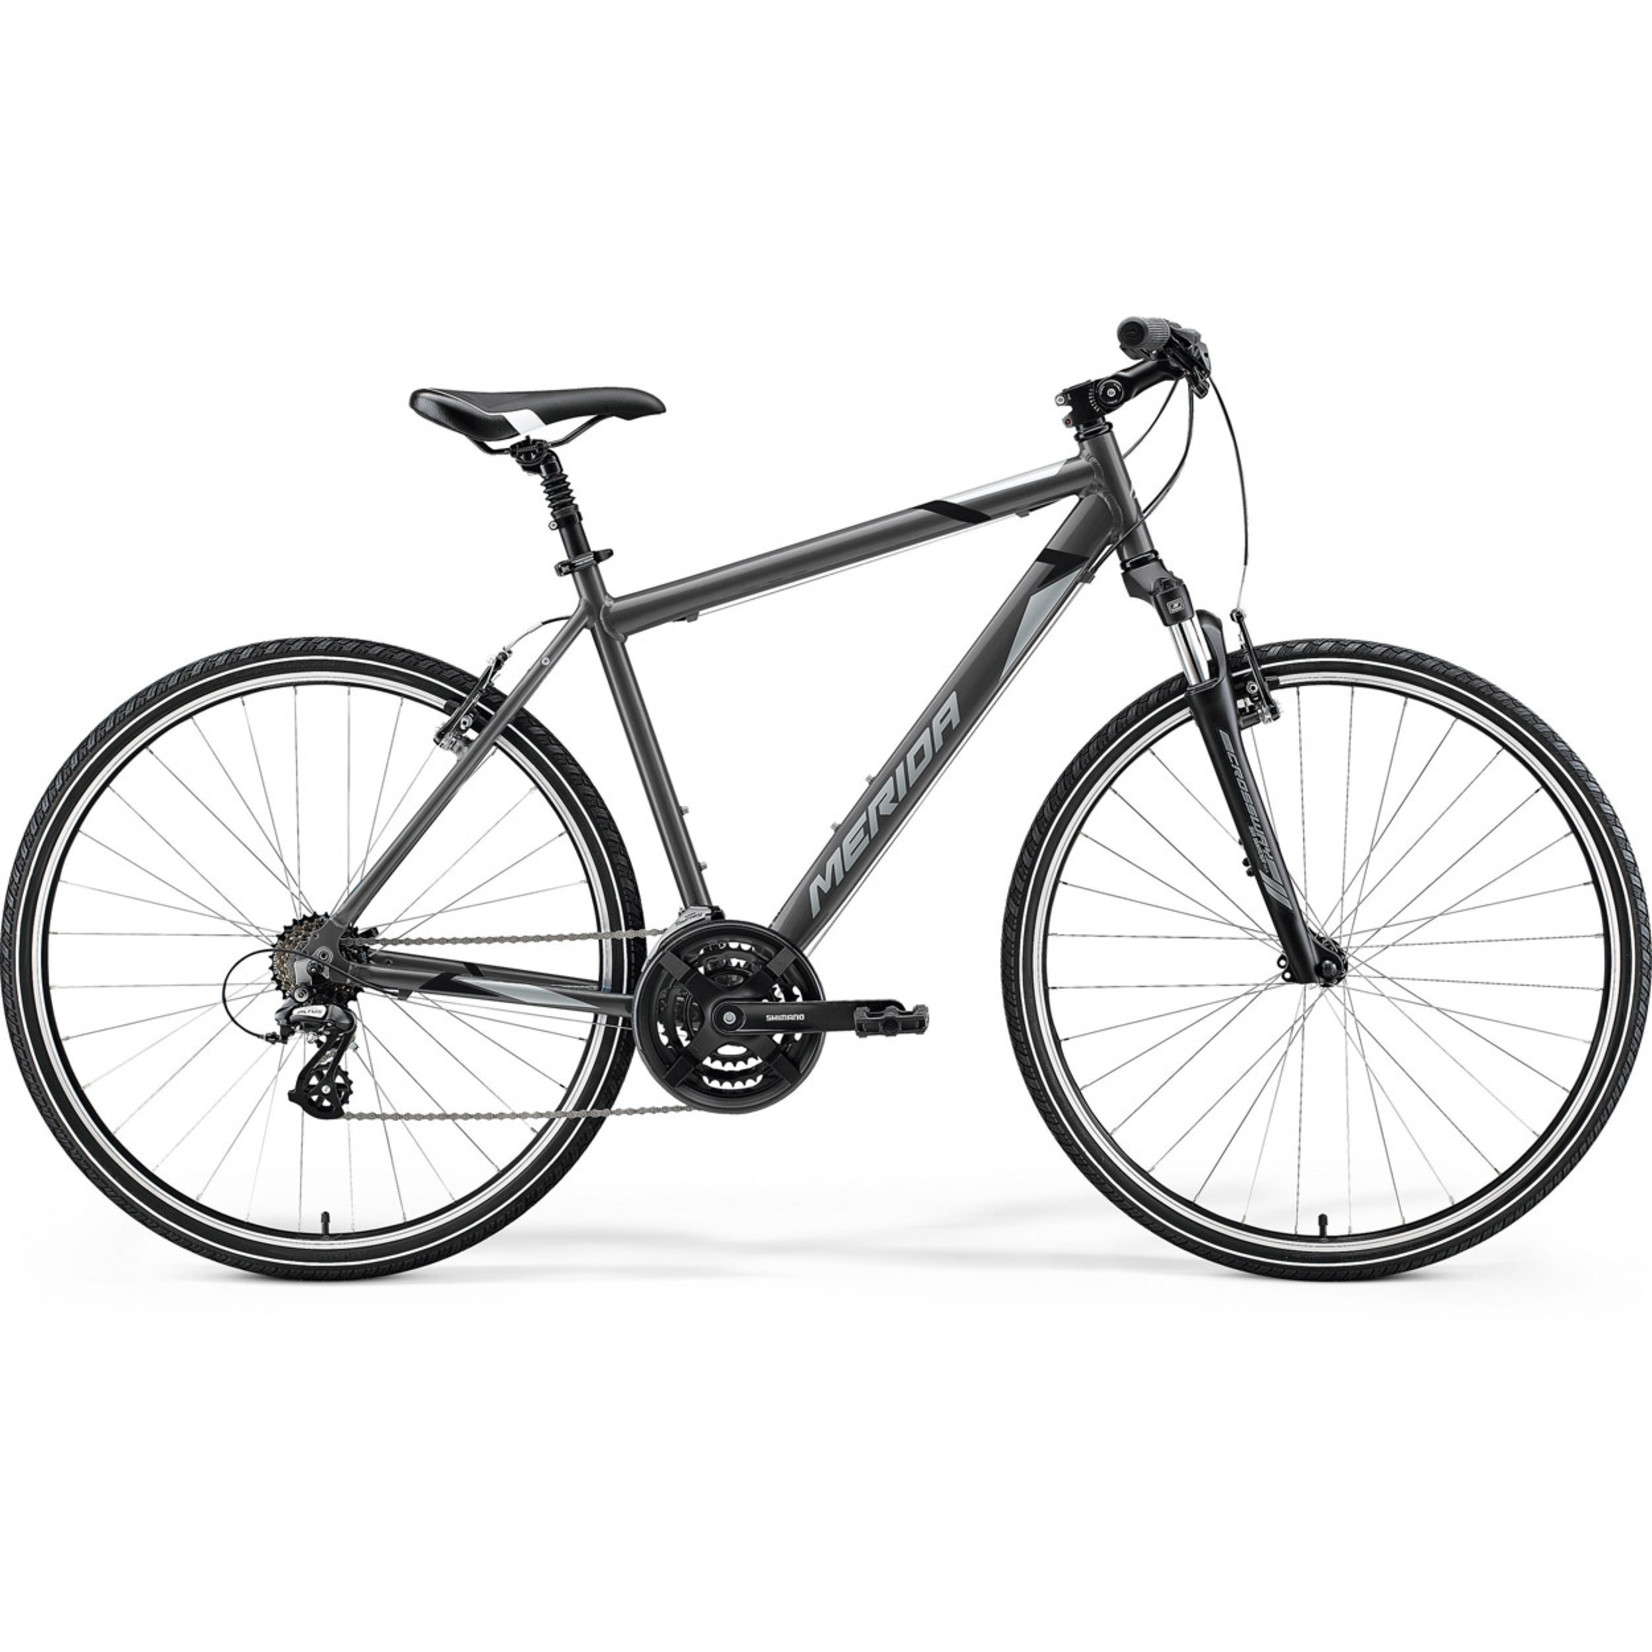 Merida Merida 2021 Crossway 10 V Hybrid Bike - Silk Anthracite(Grey/Black) - Small/Medium(48cm)